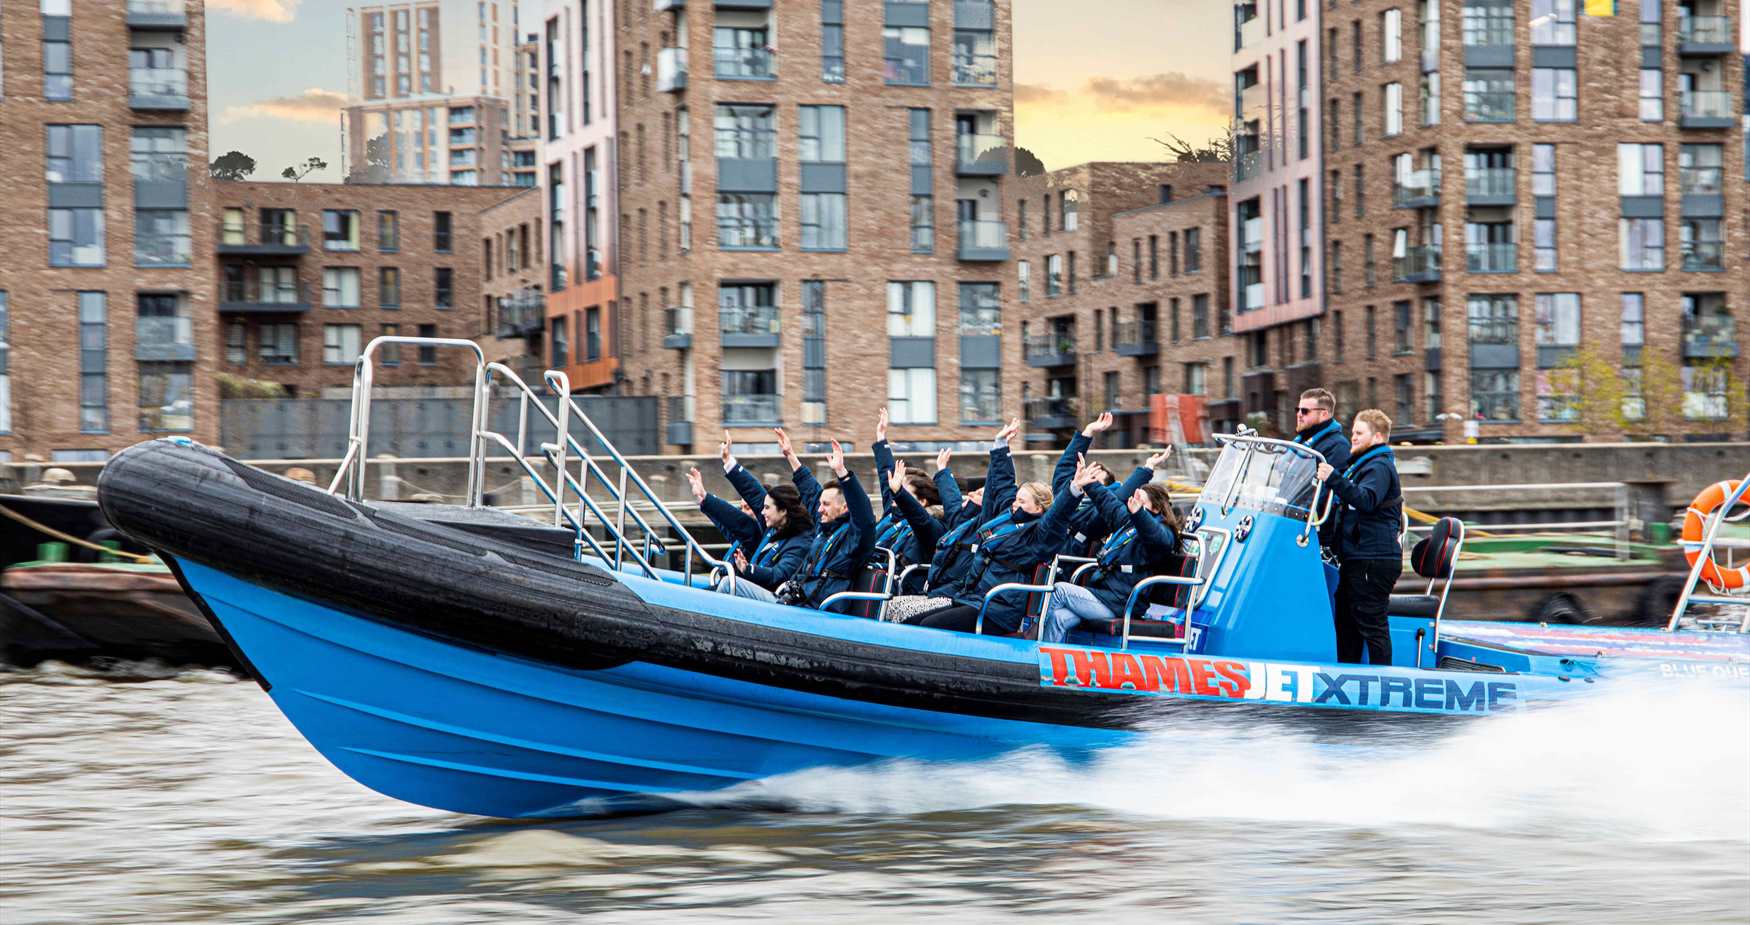 Thamesjet speedboat on the River Thames, London